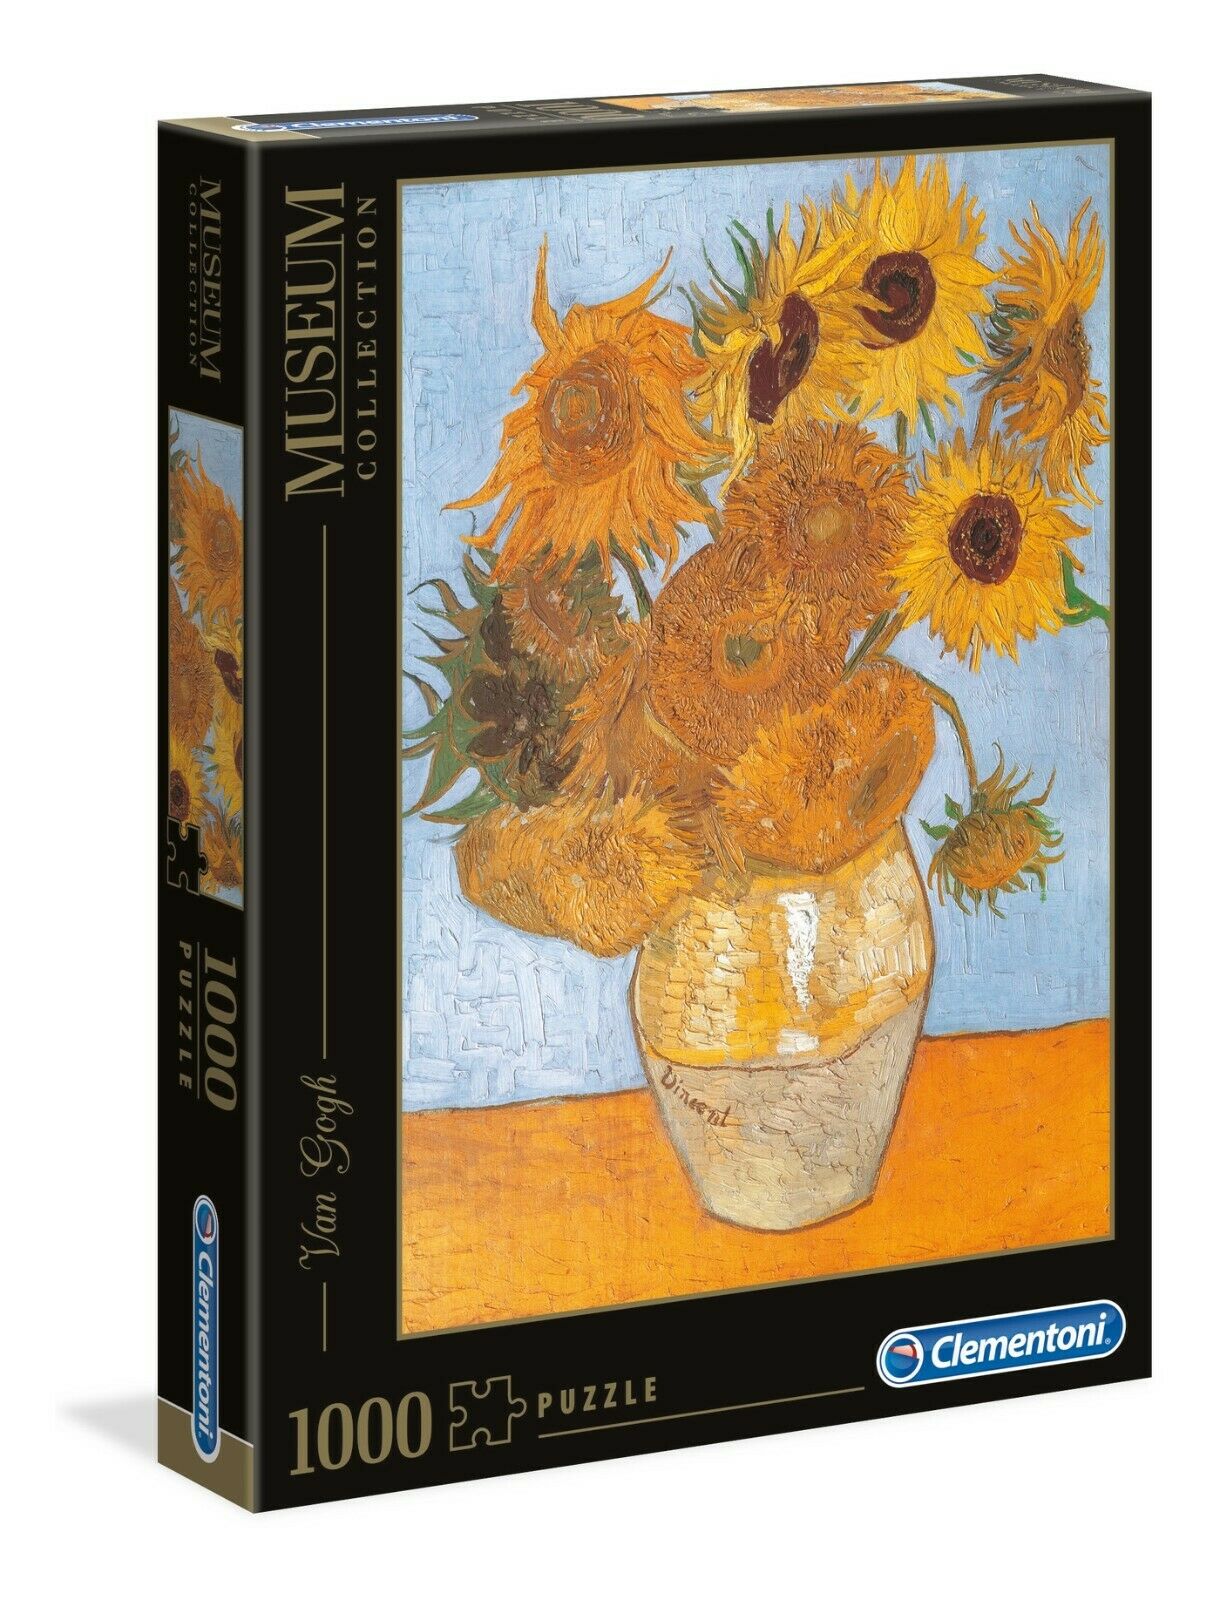 Sonnenblumen - 1000 Puzzleteile